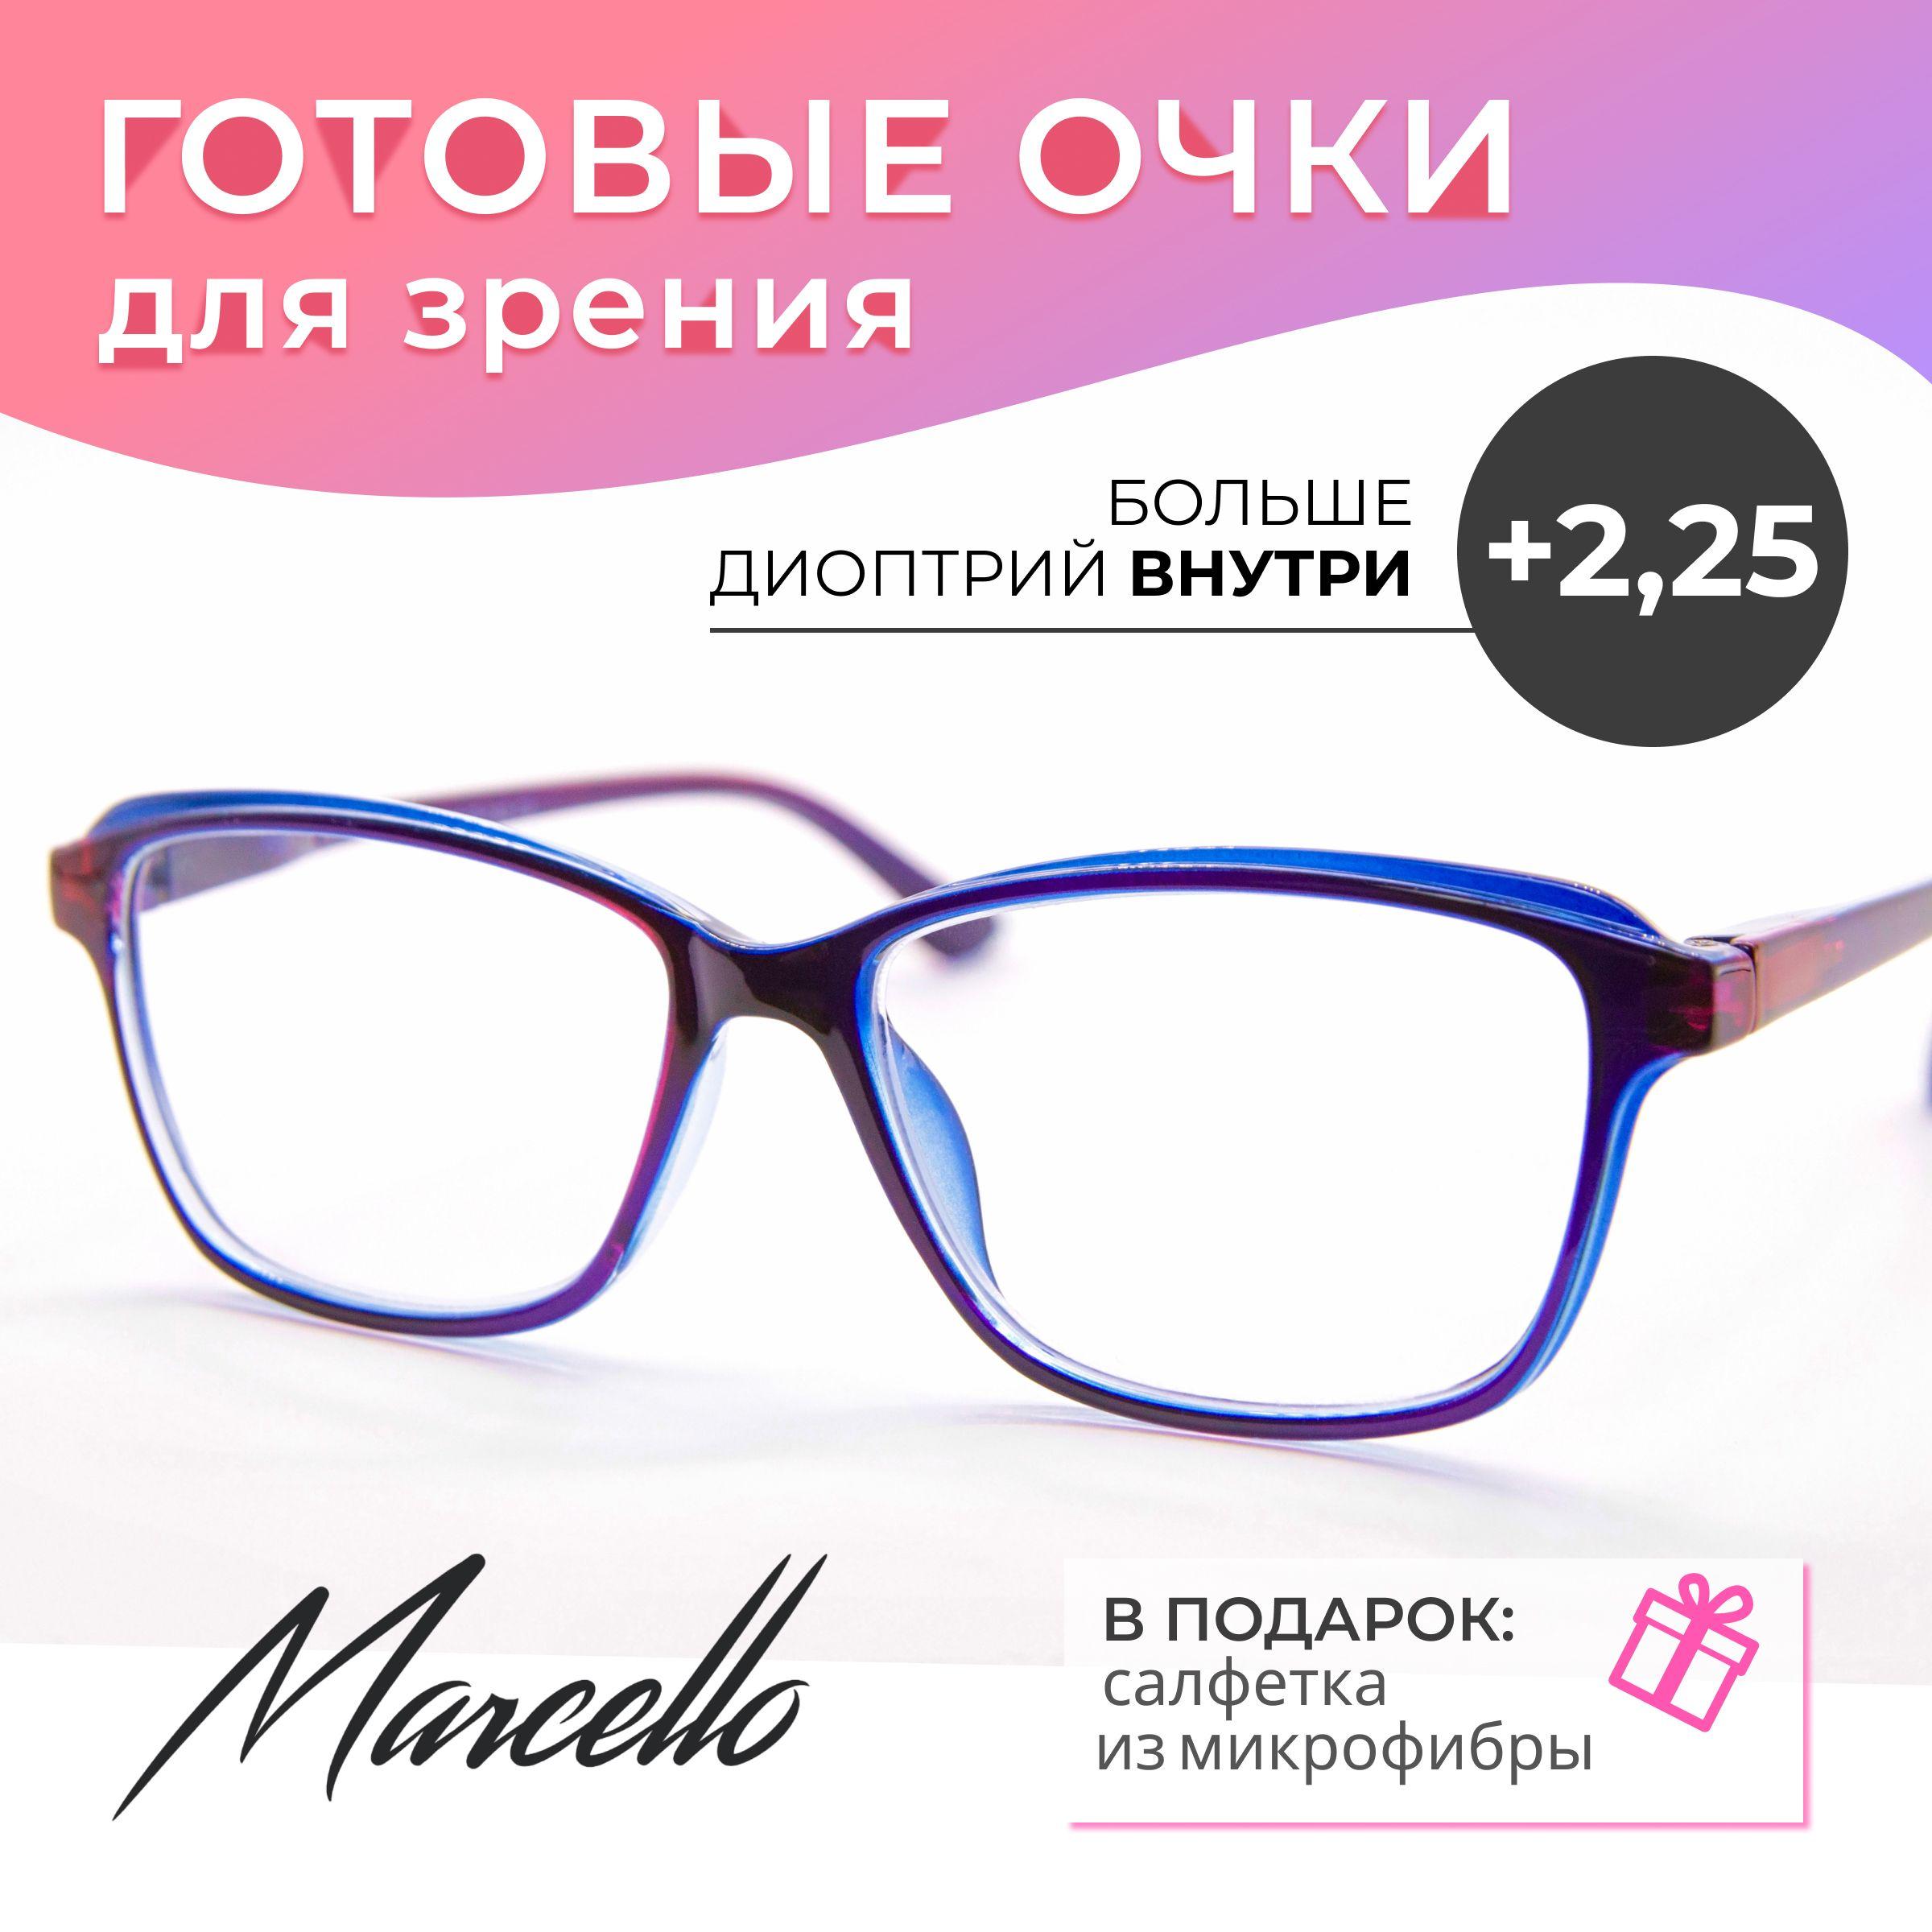 Marcello | Готовые очки для зрения, корригирующие, Marcello GA0303 C3 с диоптриями +2.25 для чтения на плюс, очки овальные, очки женские, очки пластиковые.